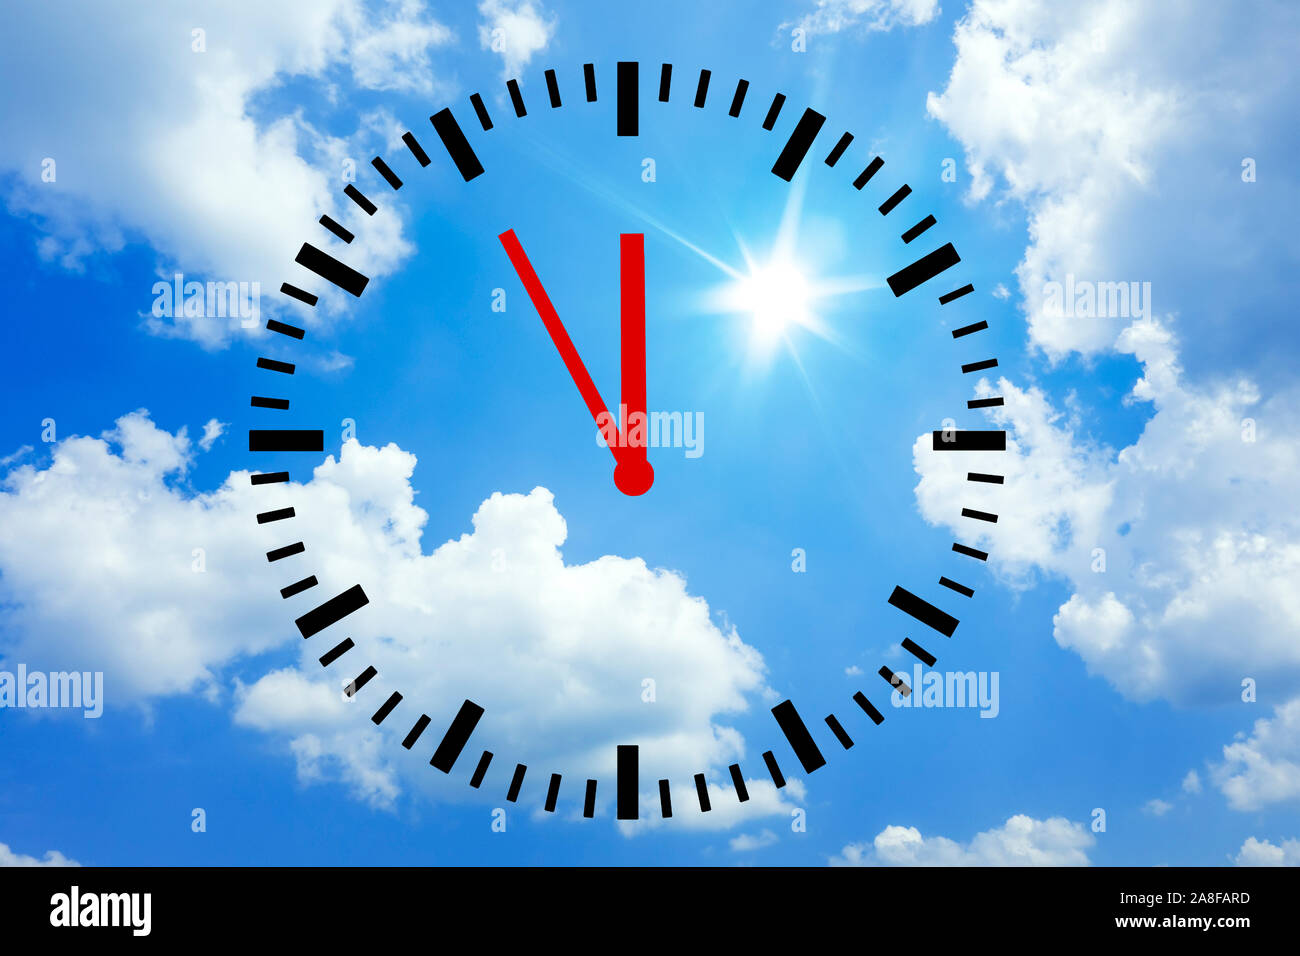 Hitzerekord, Blauer Himmel, Mittagssonne, Hitze, Rekord, Klimawandel, Uhr zeigt 5 vor 12, Stock Photo